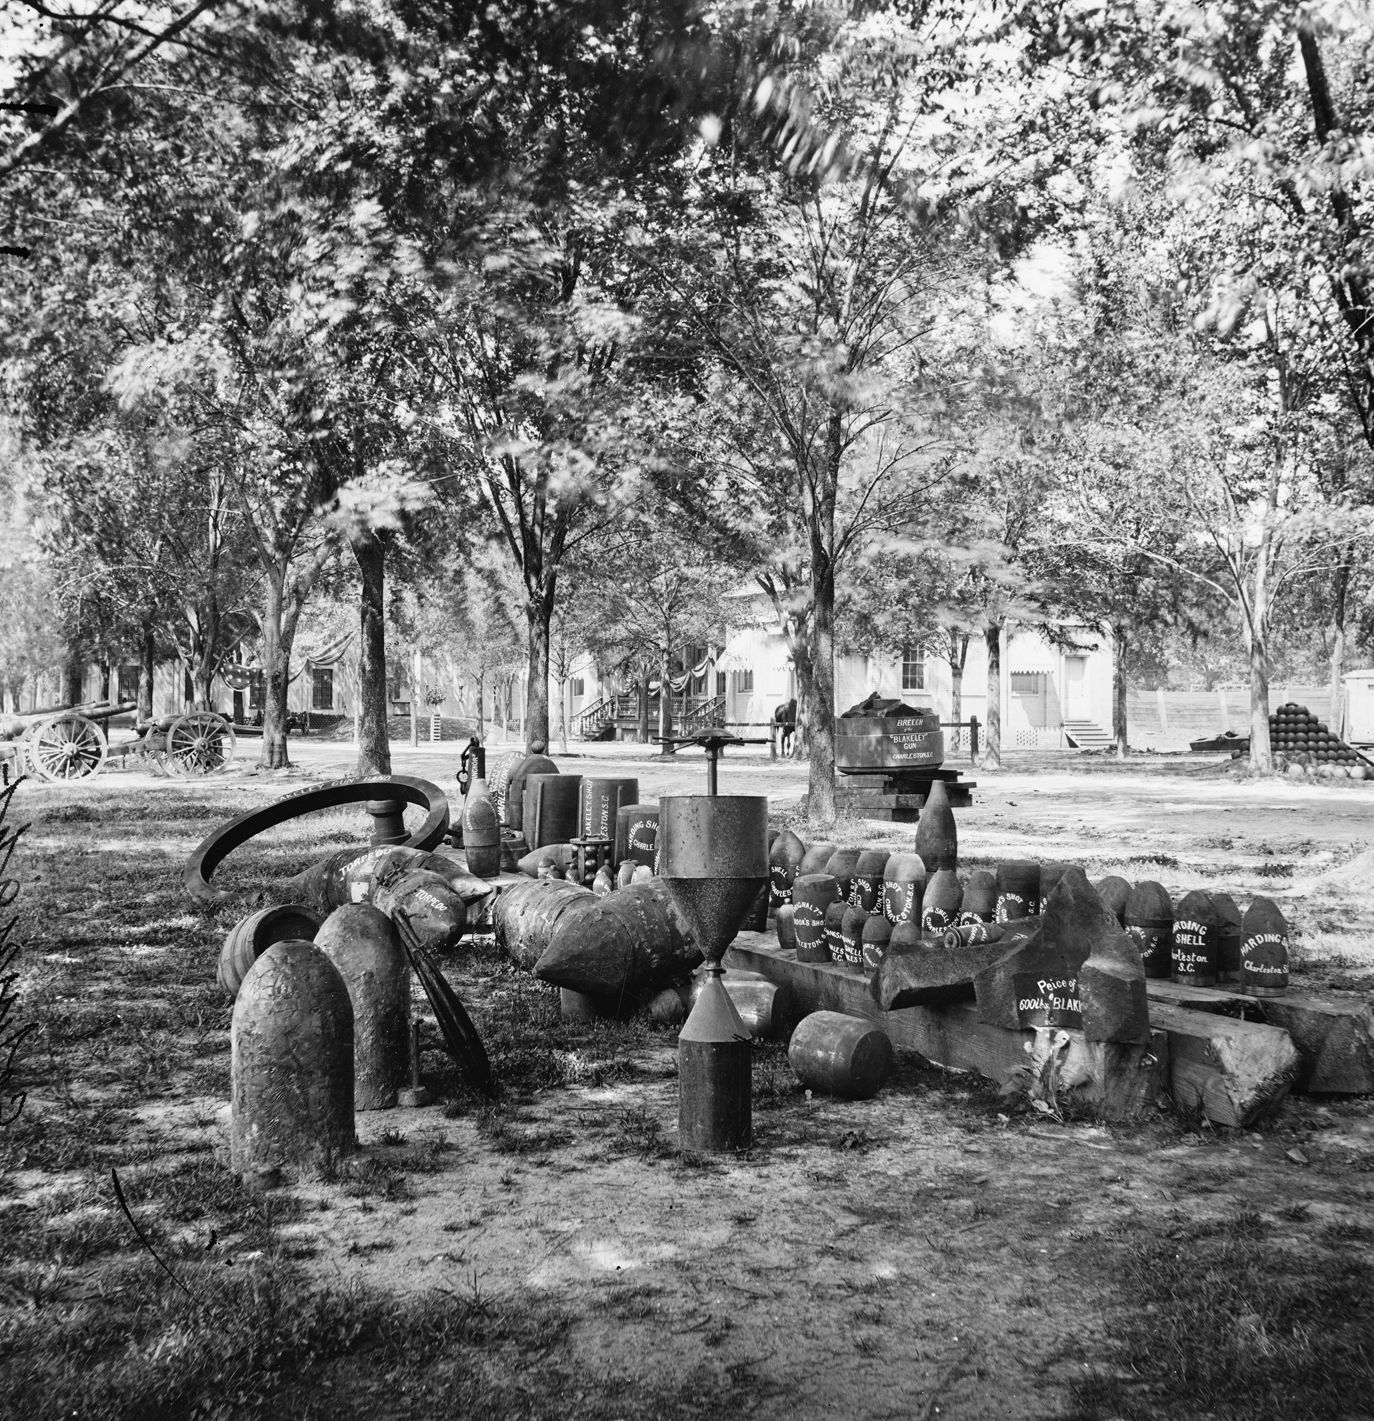 缴获的邦联军械，包括鱼雷和炮弹。邦联最高指挥部最初对使用水雷和地雷持保留态度，但最终接受了这项技术，以抵消联邦军队巨大的人力和装备优势。